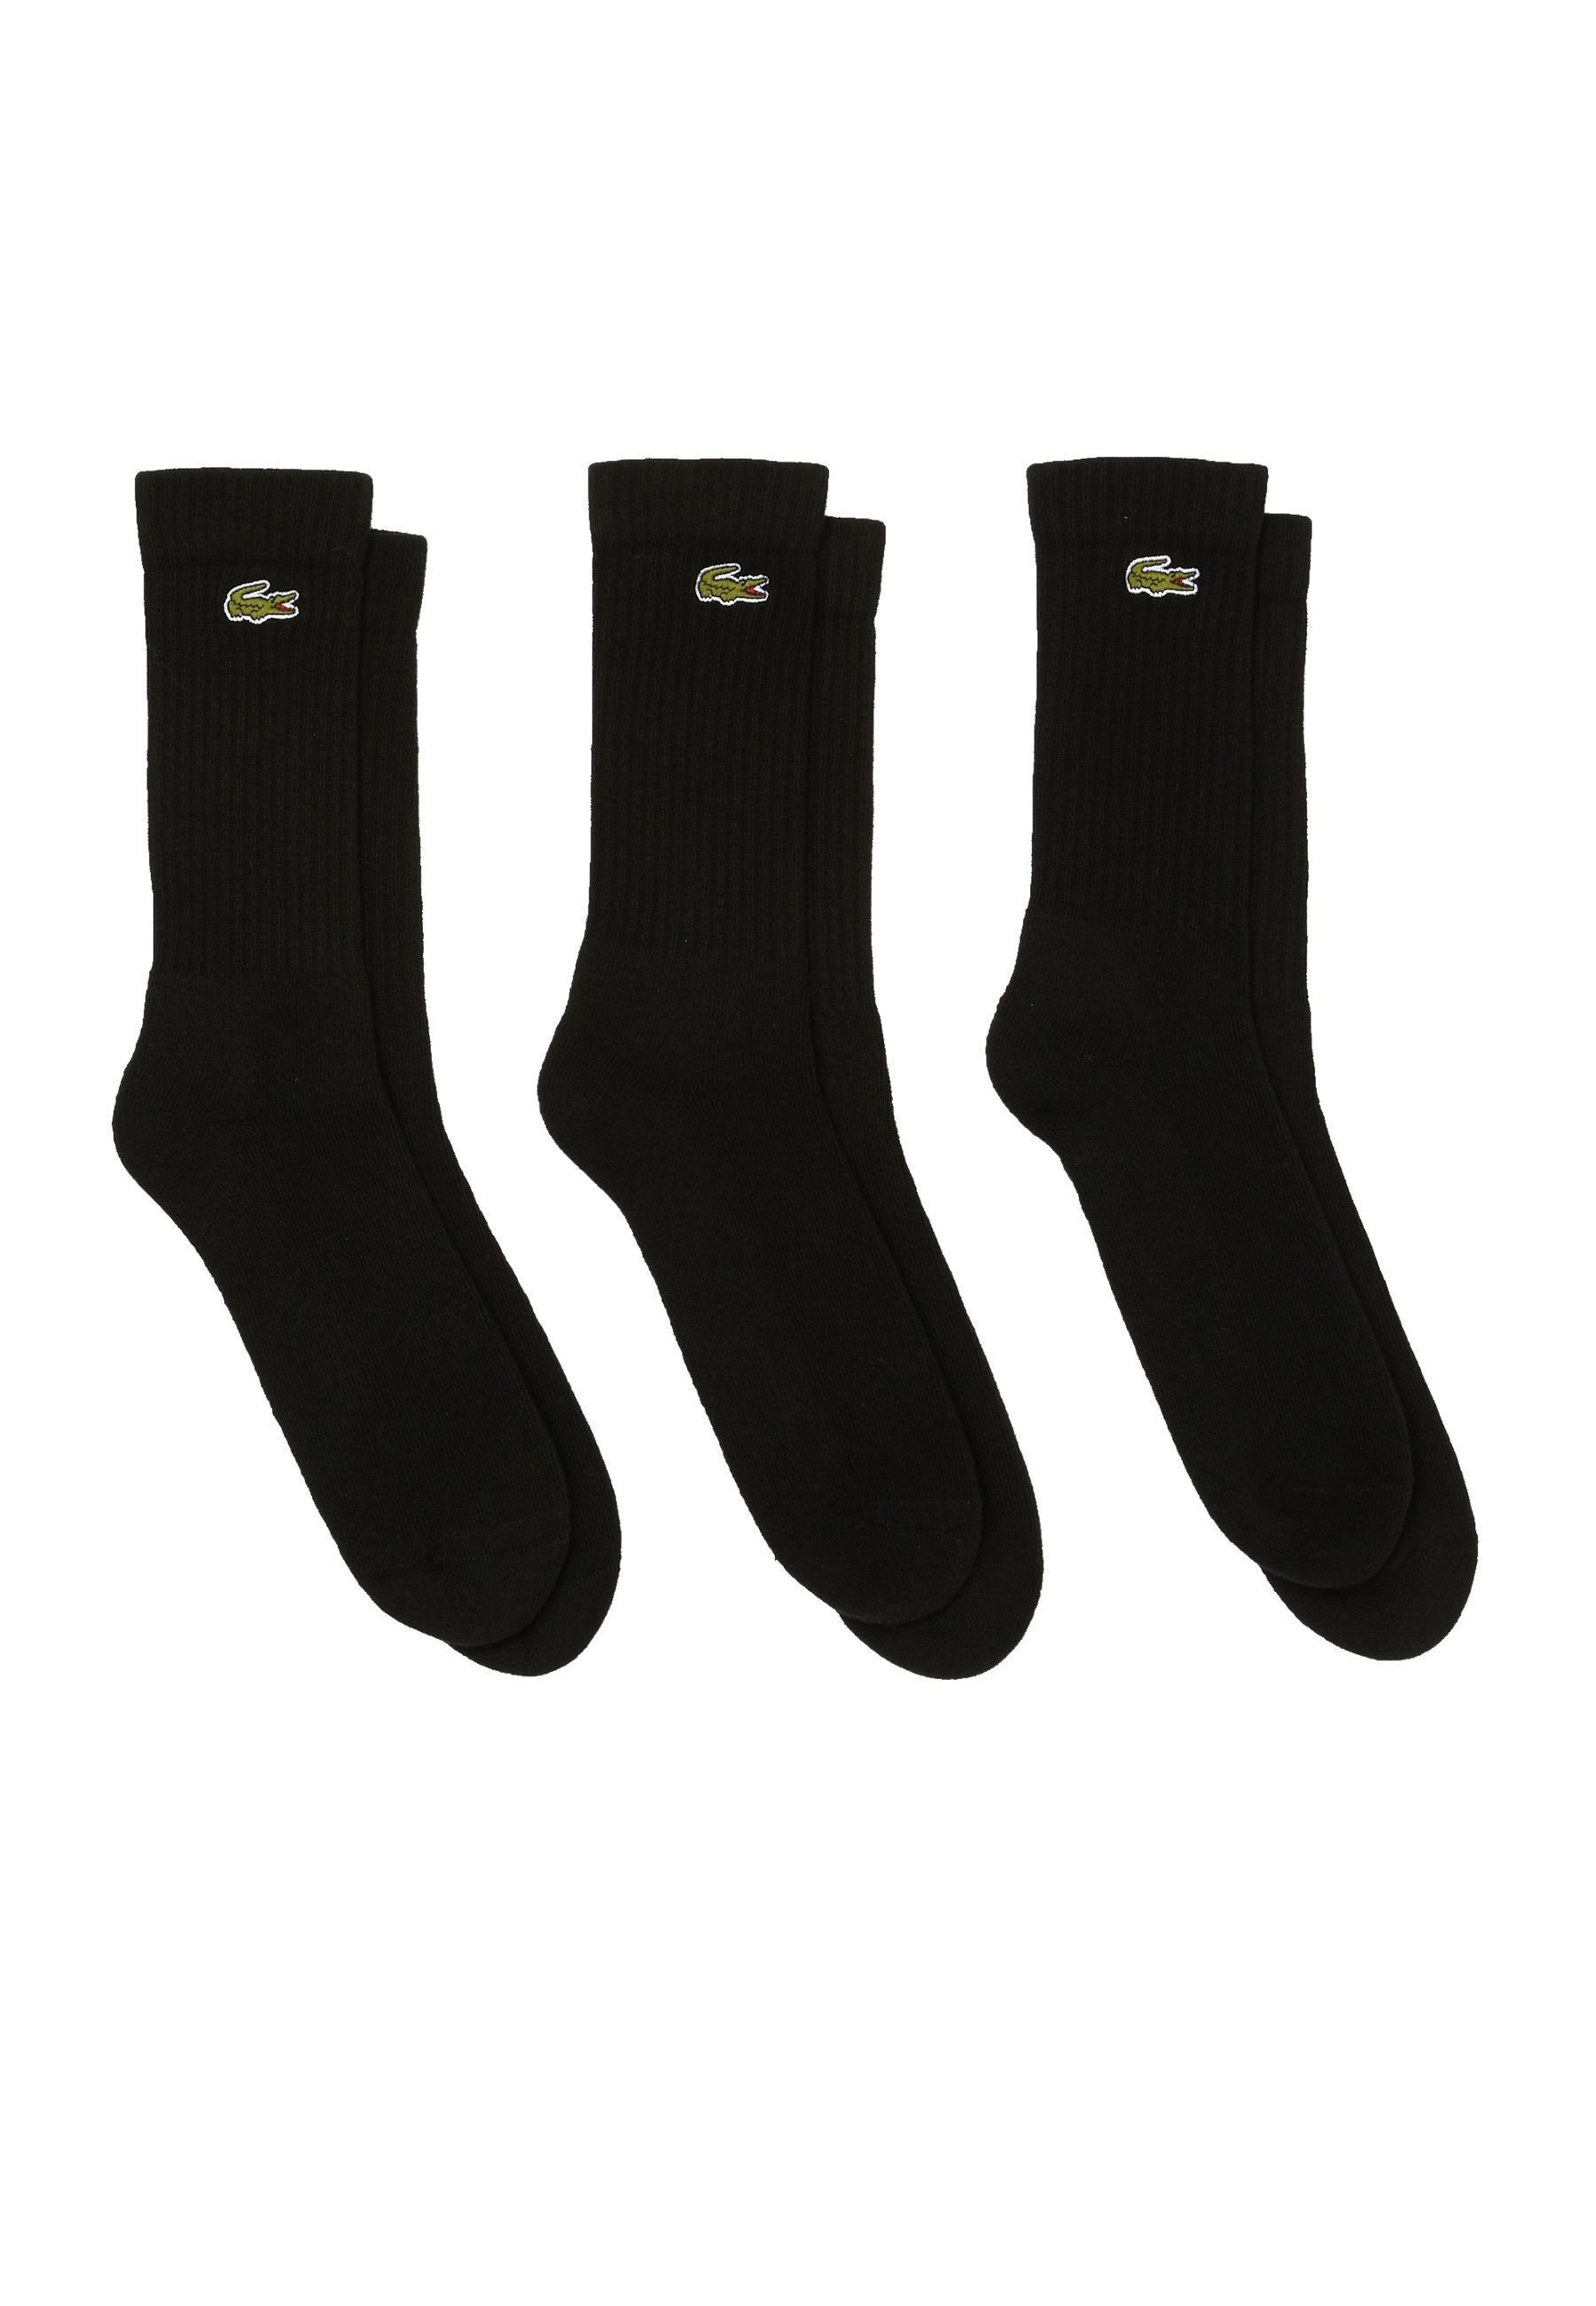 Socken Socken schwarz hohe (3-Paar) Offer Dreierpack Lacoste Permanent Socken